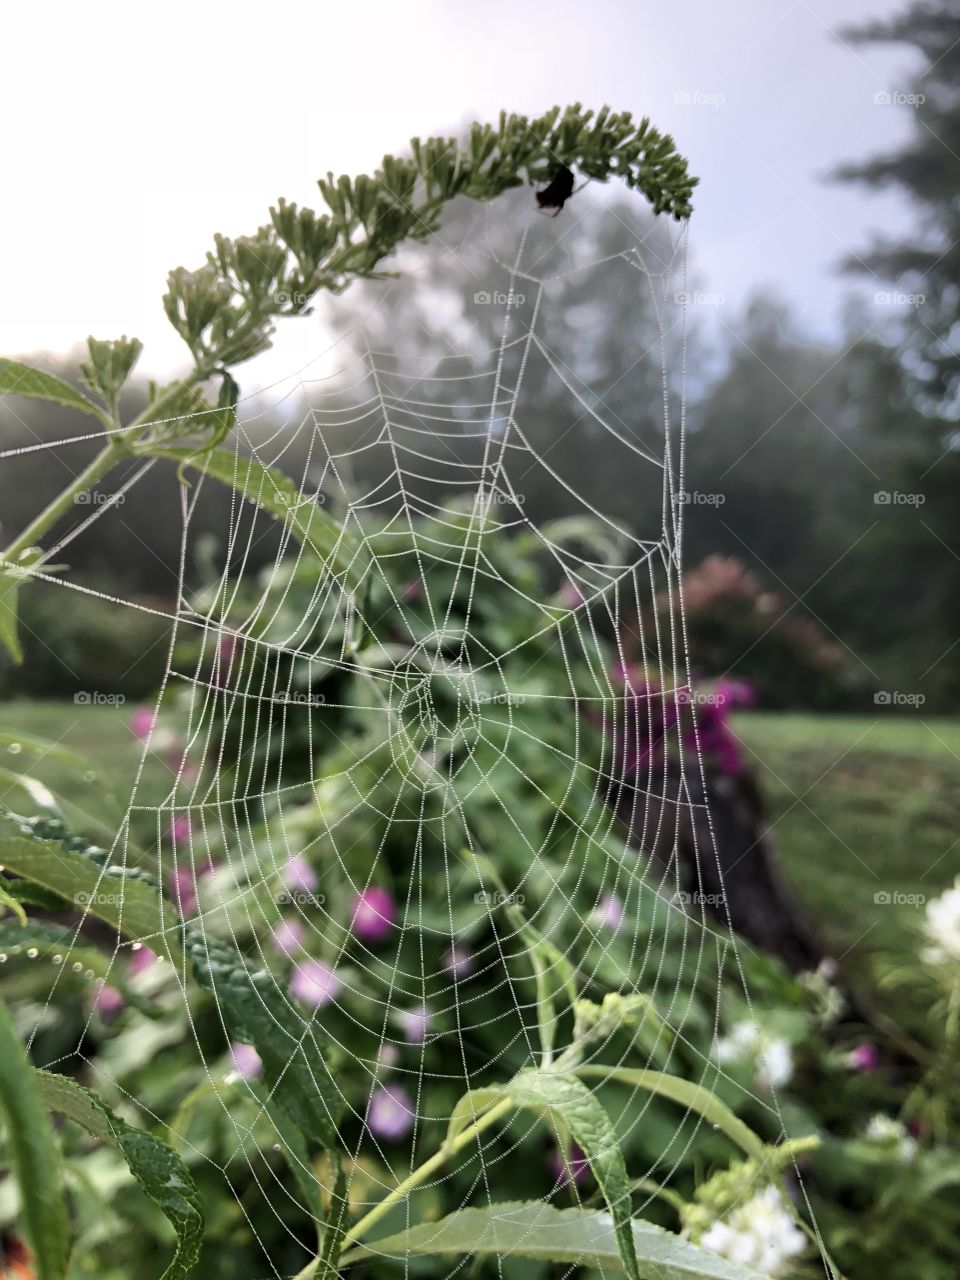 Spider webs 